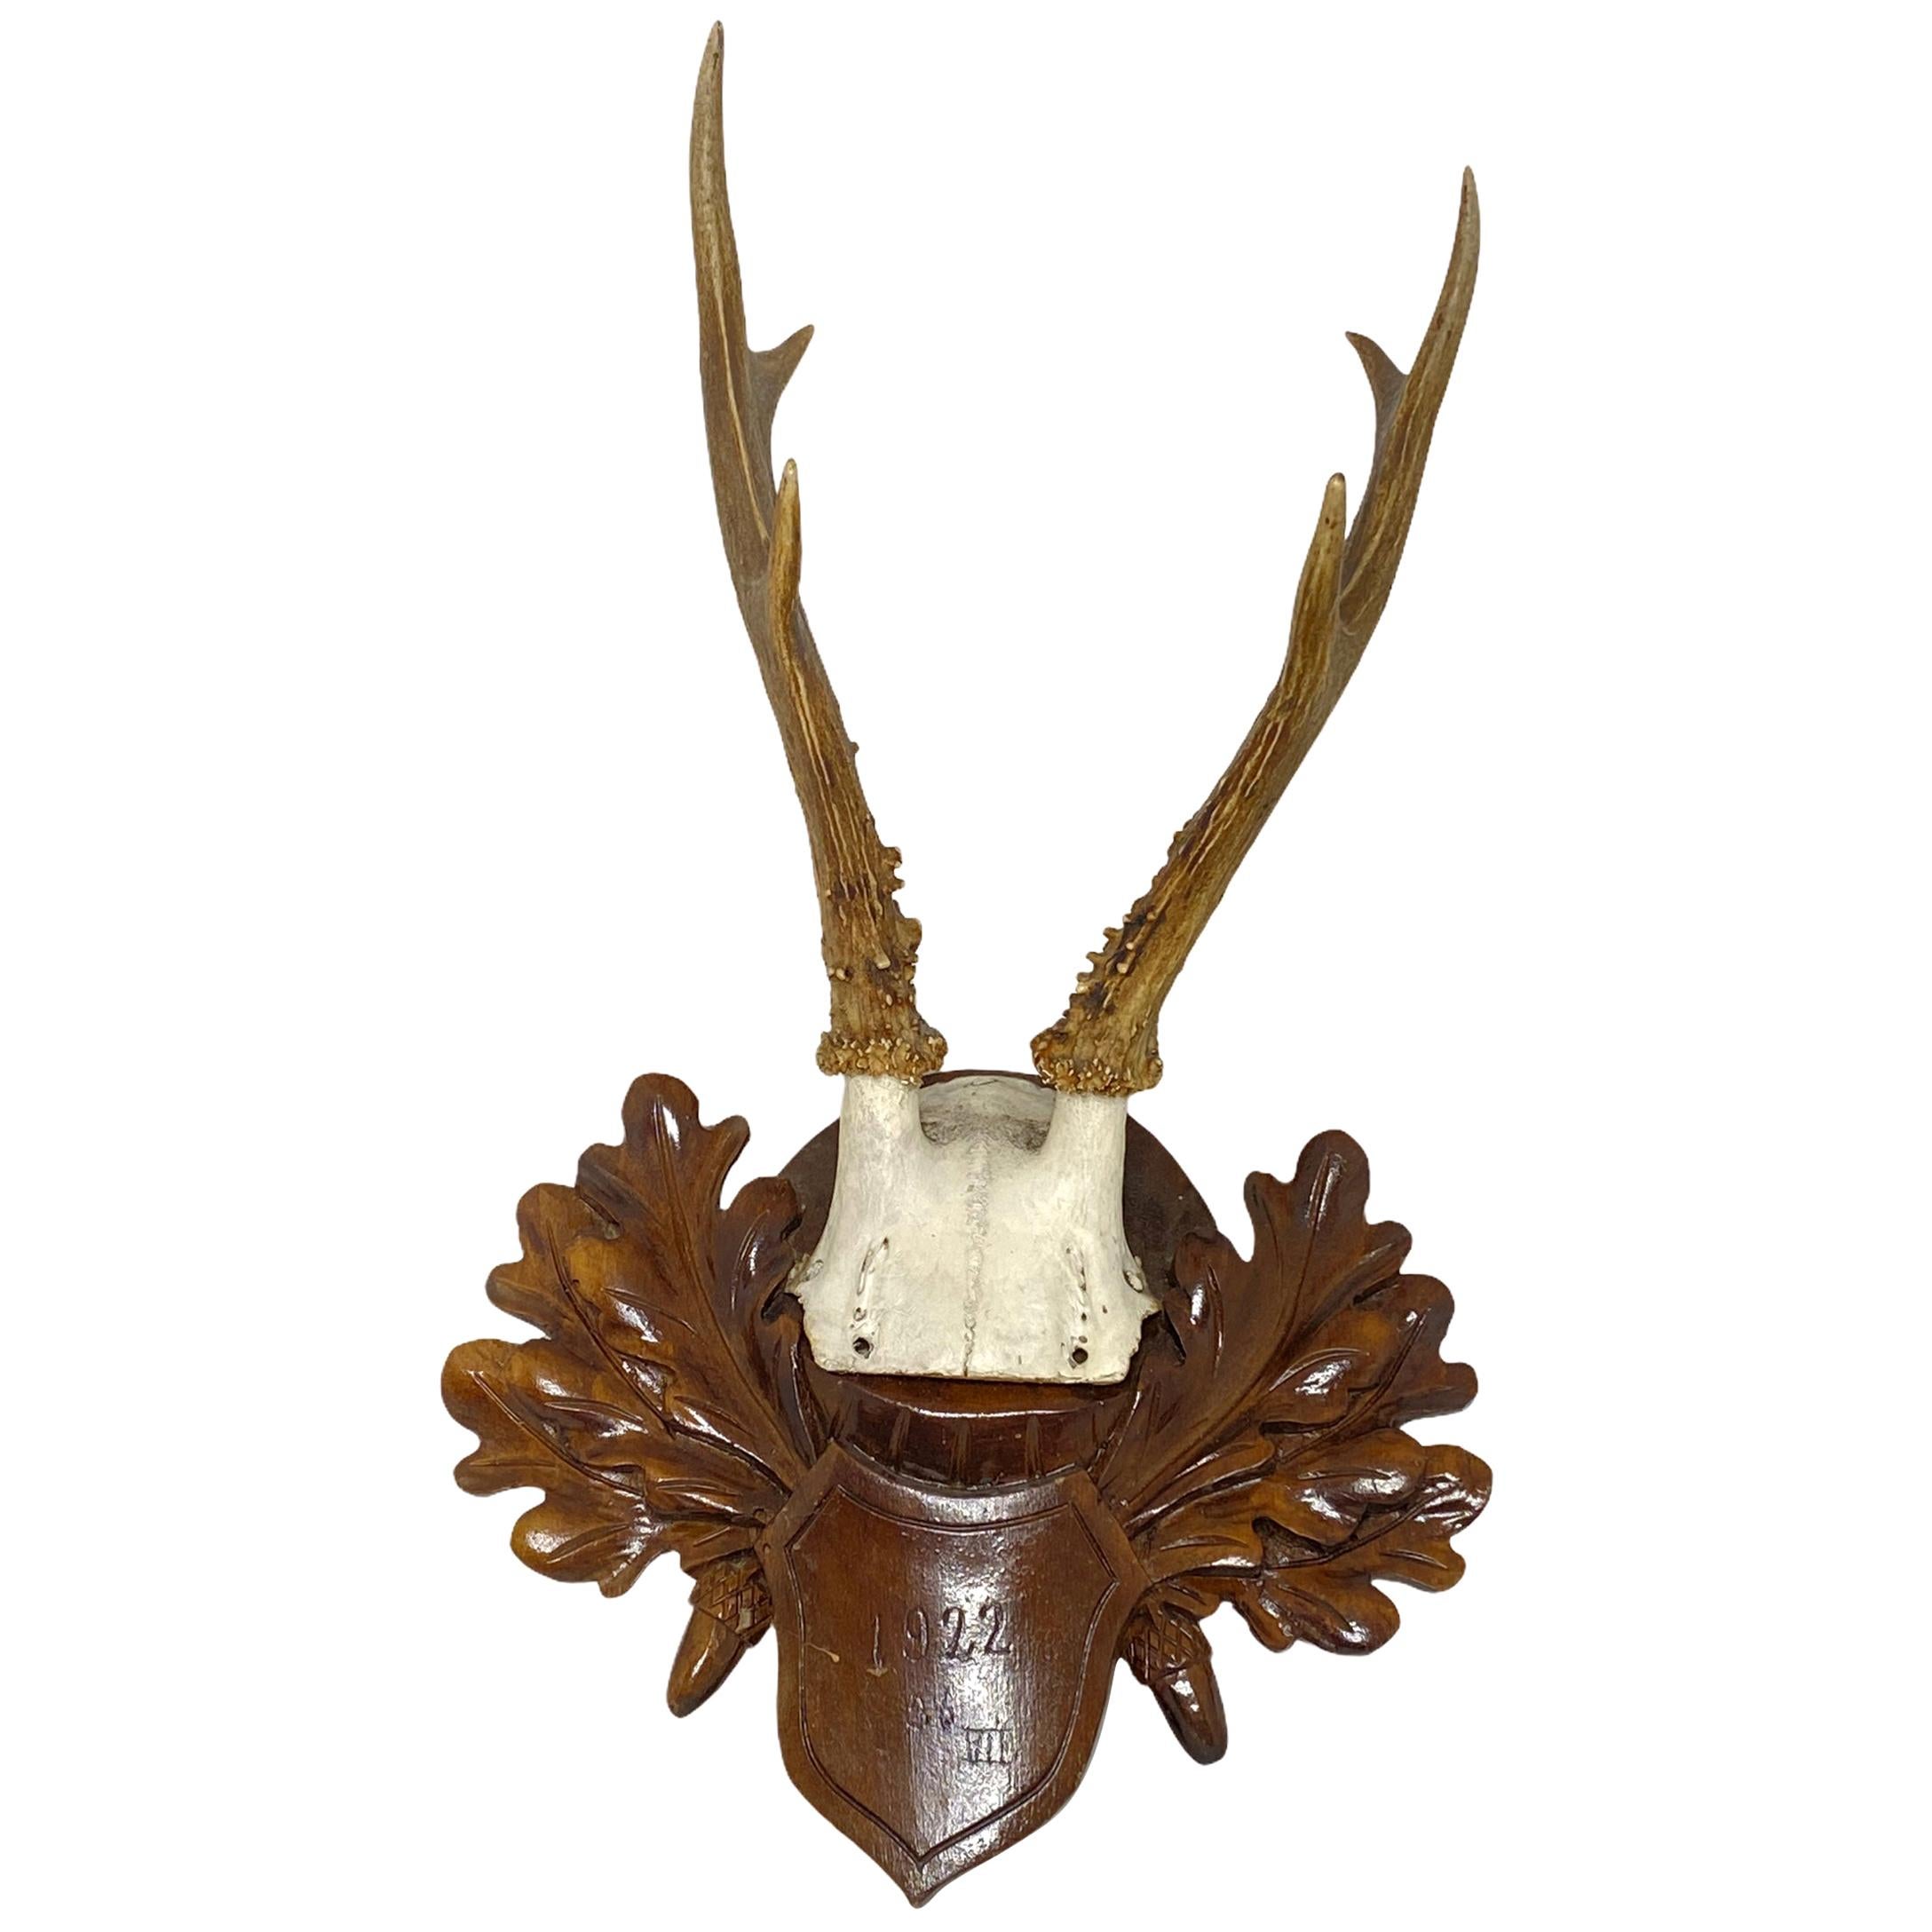 Antique Black Forest Deer Antler Trophy on Wood Carved Plaque, Germany, 1922